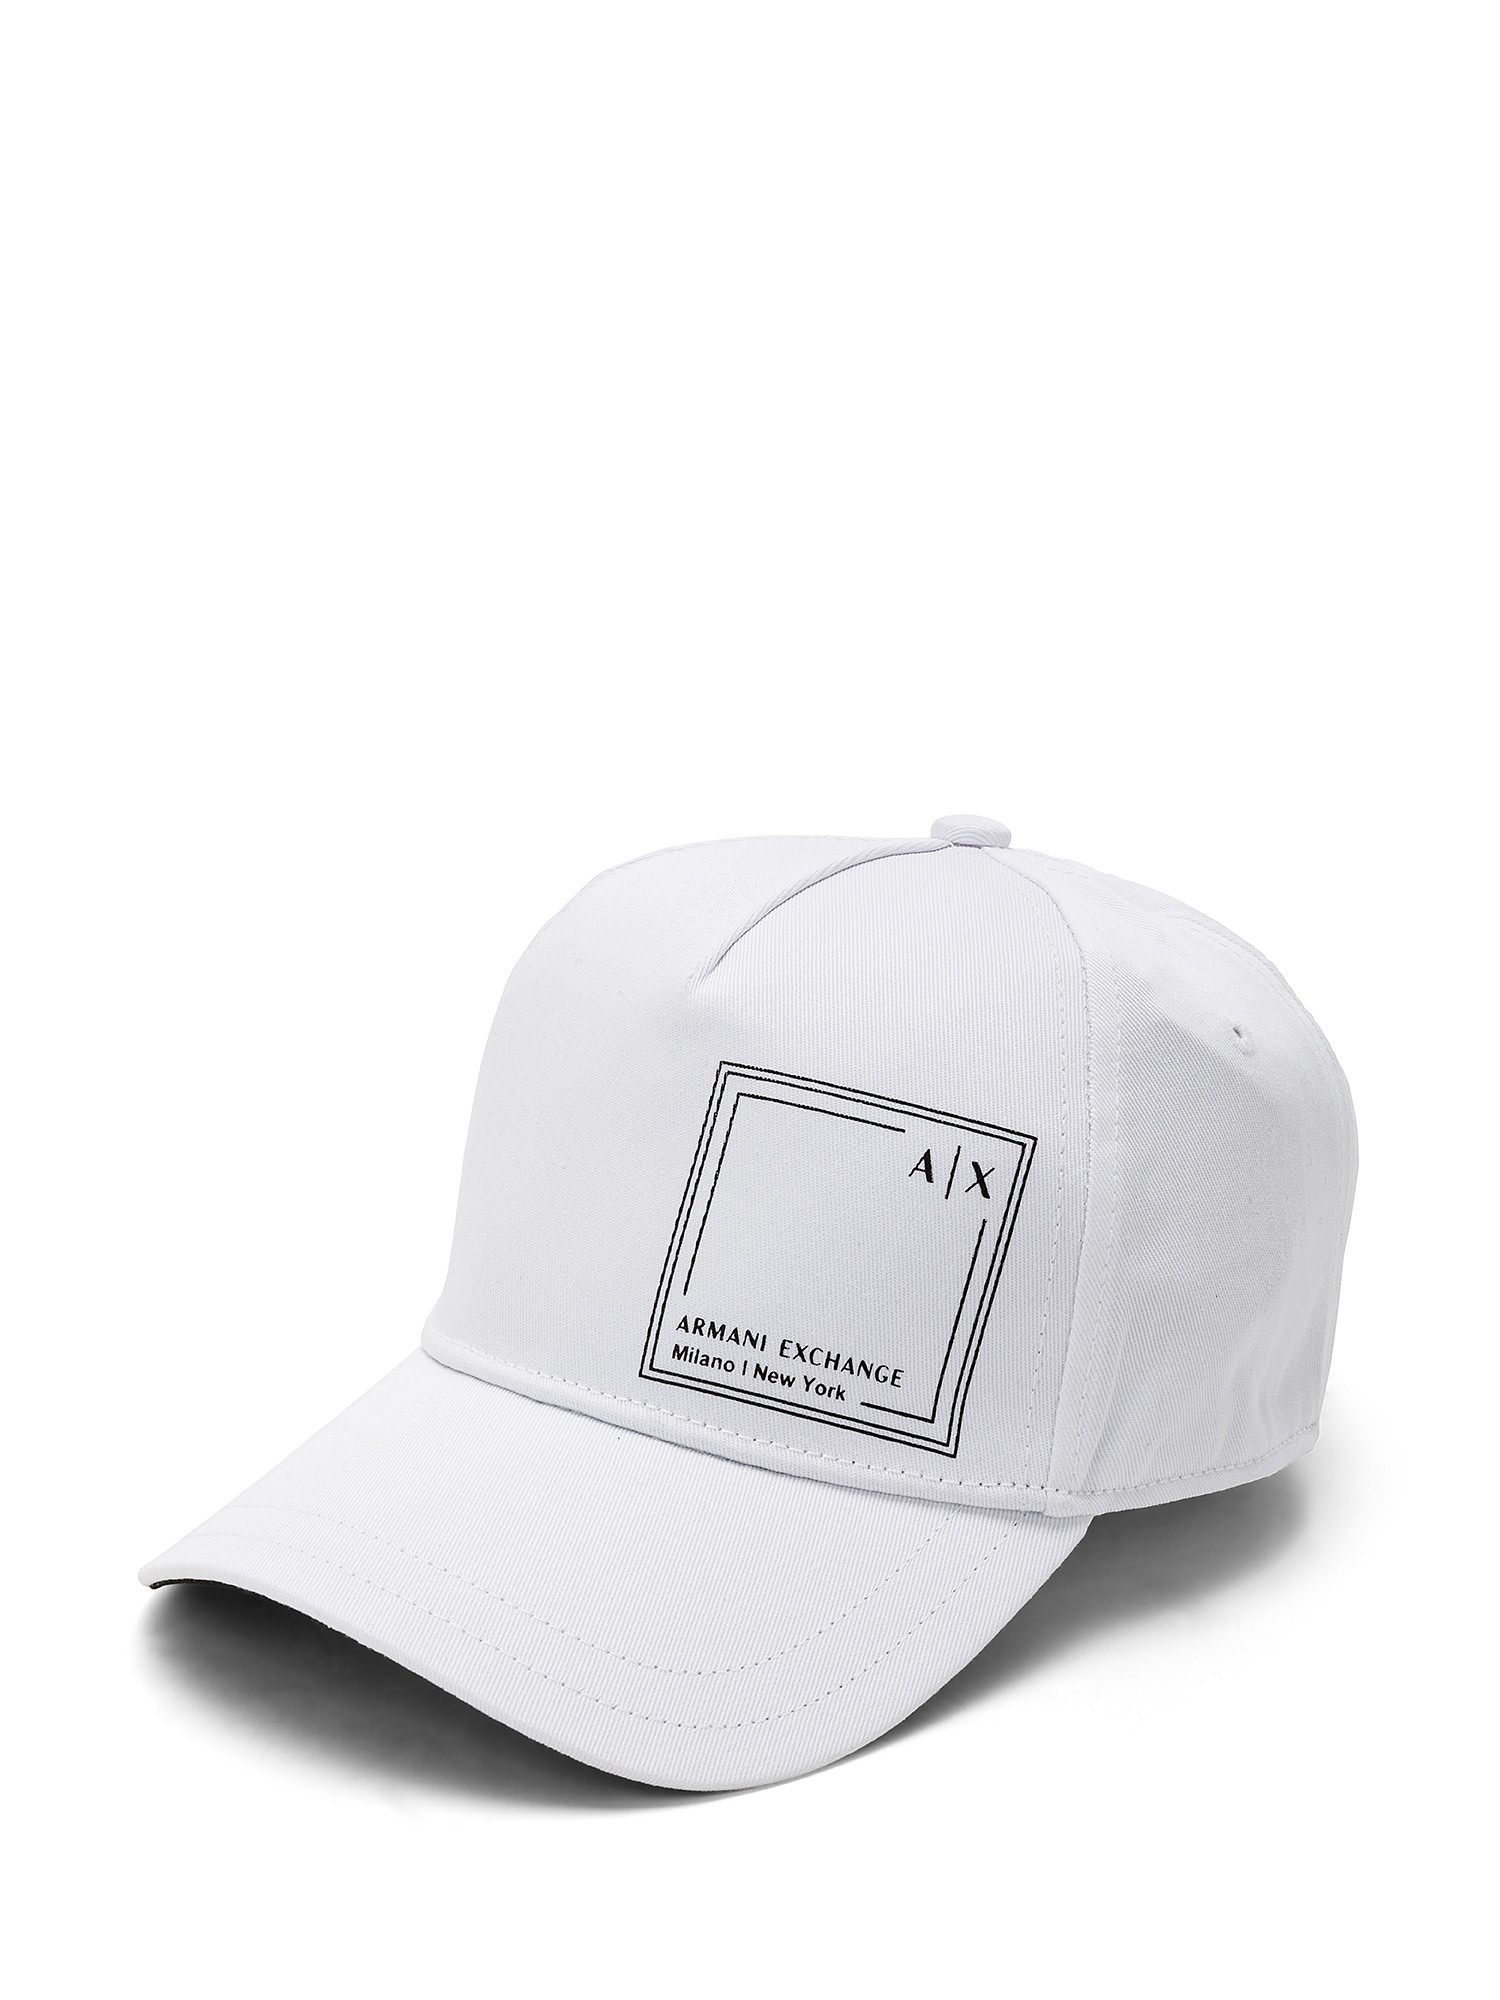 Armani Exchange - Cotton baseball cap, White, large image number 0